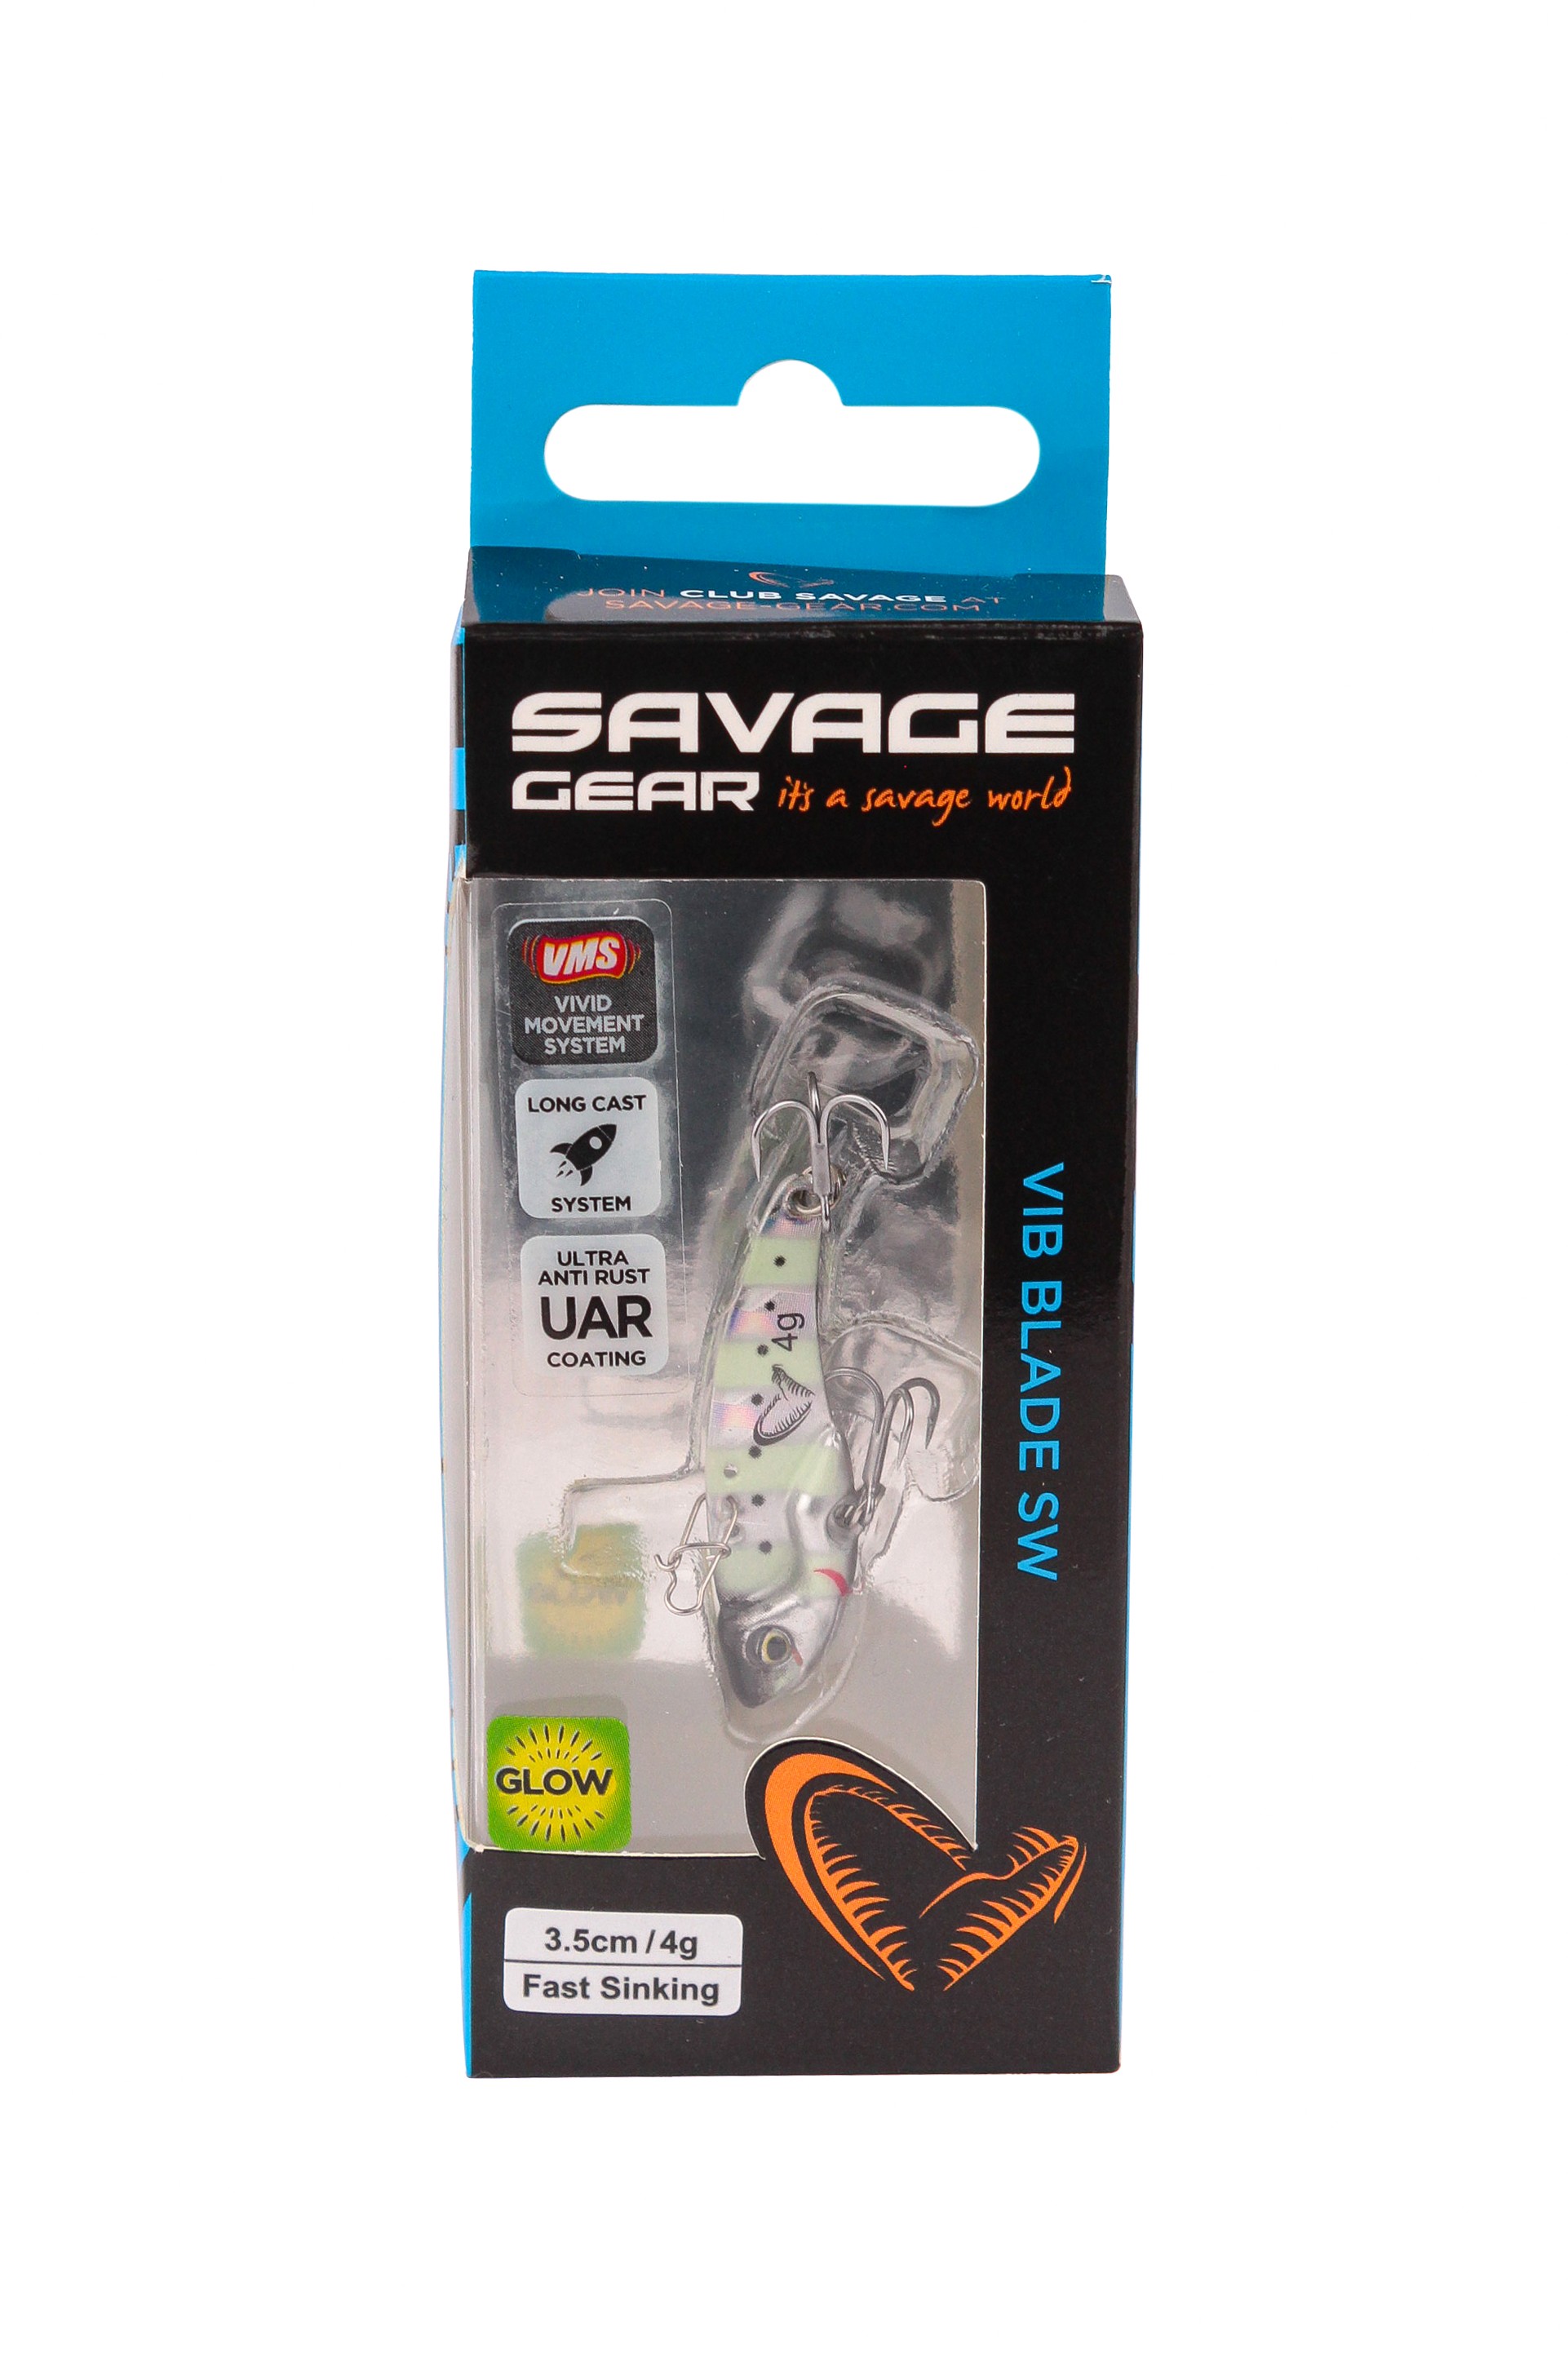 Блесна Savage Gear Vib blade SW 3,5см 4гр fast sinking zebra glow - фото 1